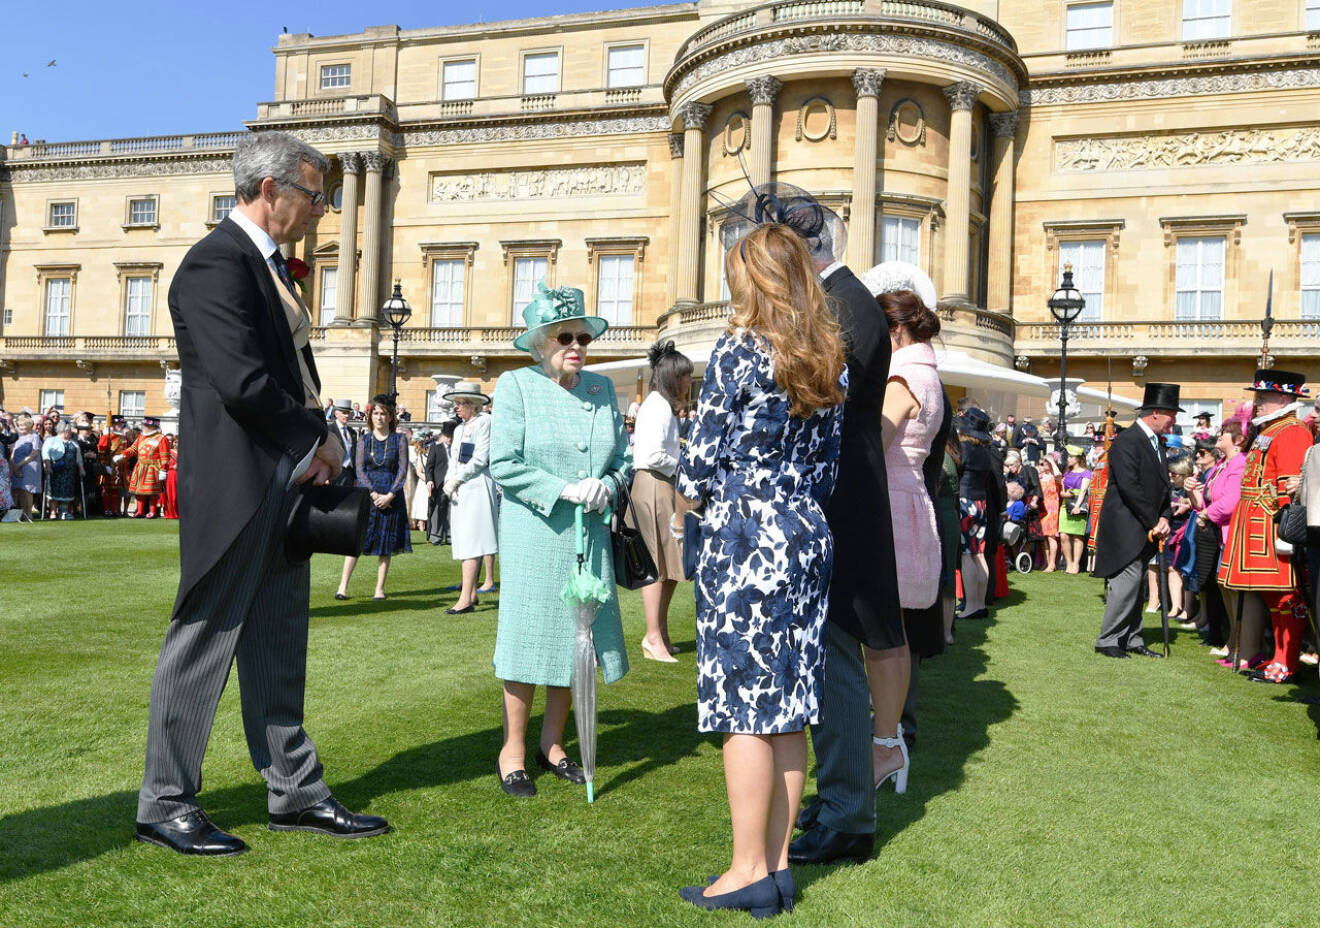 Buckingham Palace trädgård - här ska prinsessan Beatrice ha sin bröllopsmottagning.